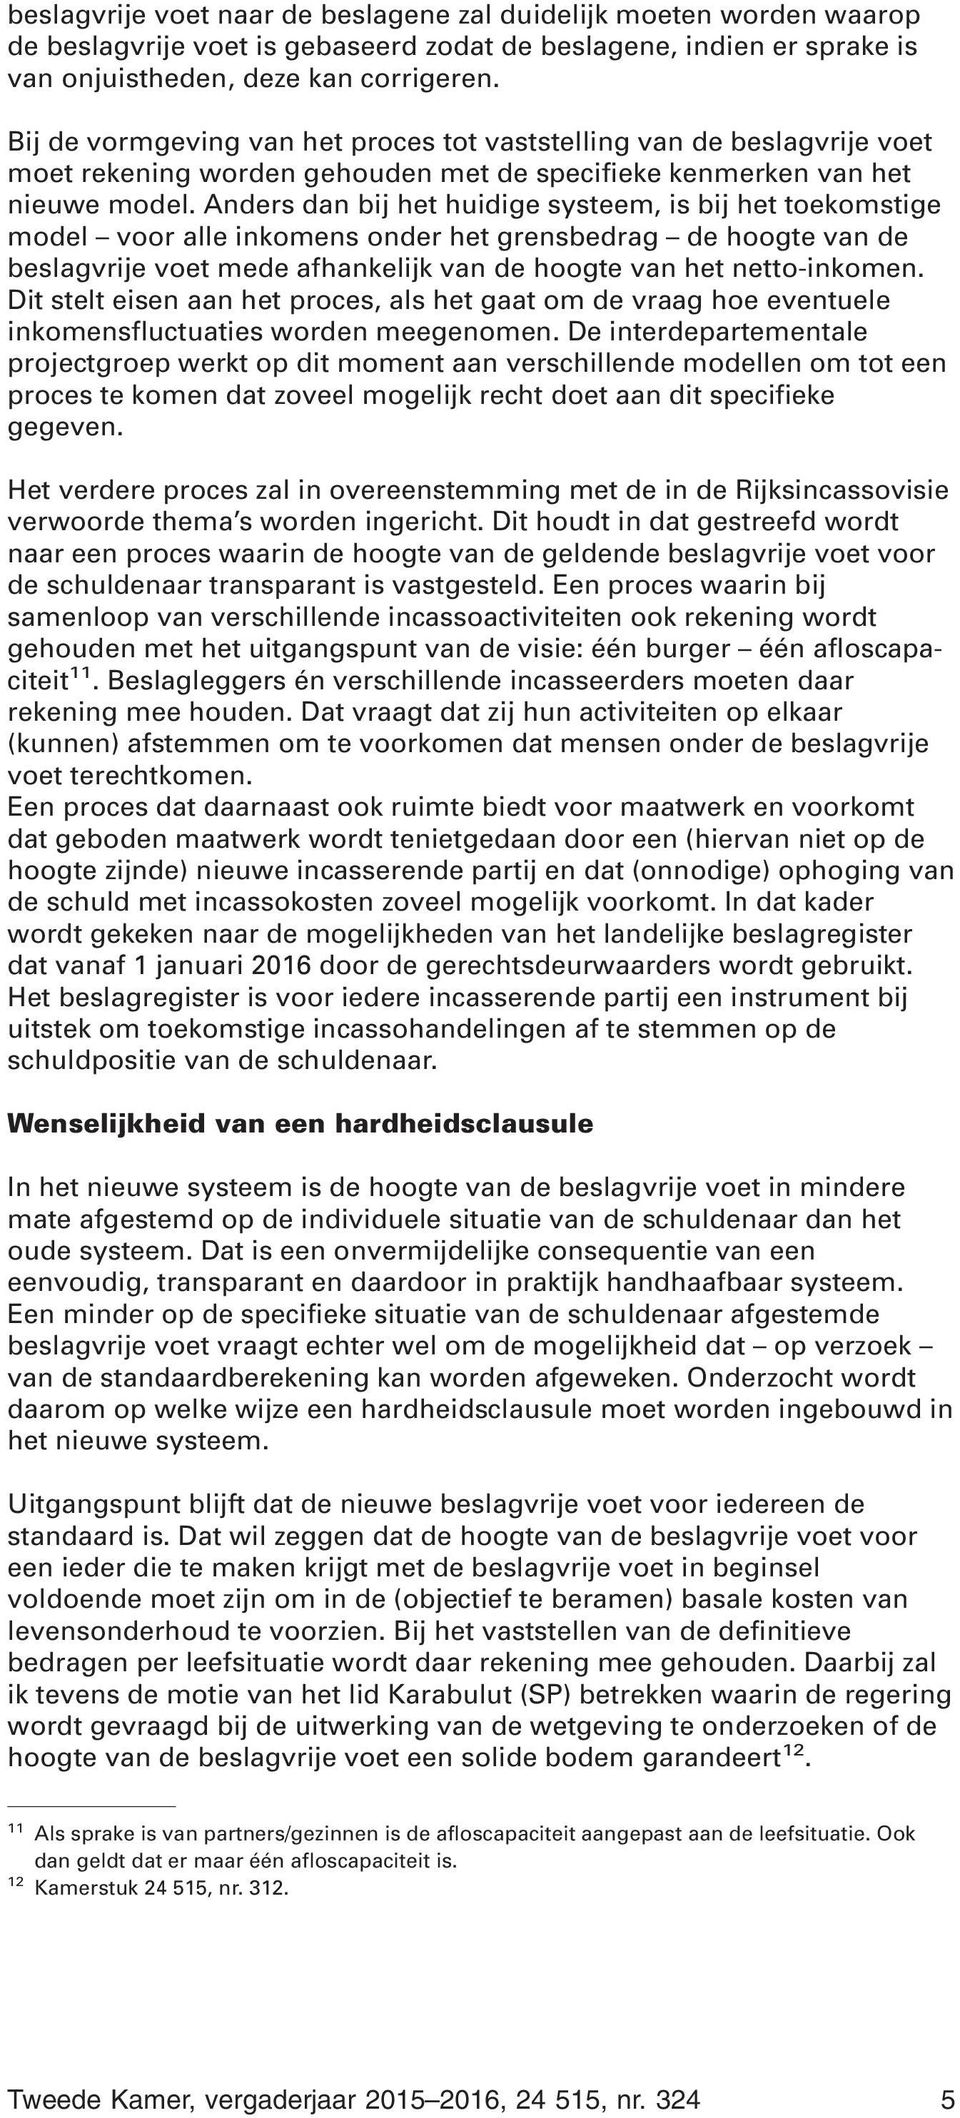 Anders dan bij het huidige systeem, is bij het toekomstige model voor alle inkomens onder het grensbedrag de hoogte van de beslagvrije voet mede afhankelijk van de hoogte van het netto-inkomen.